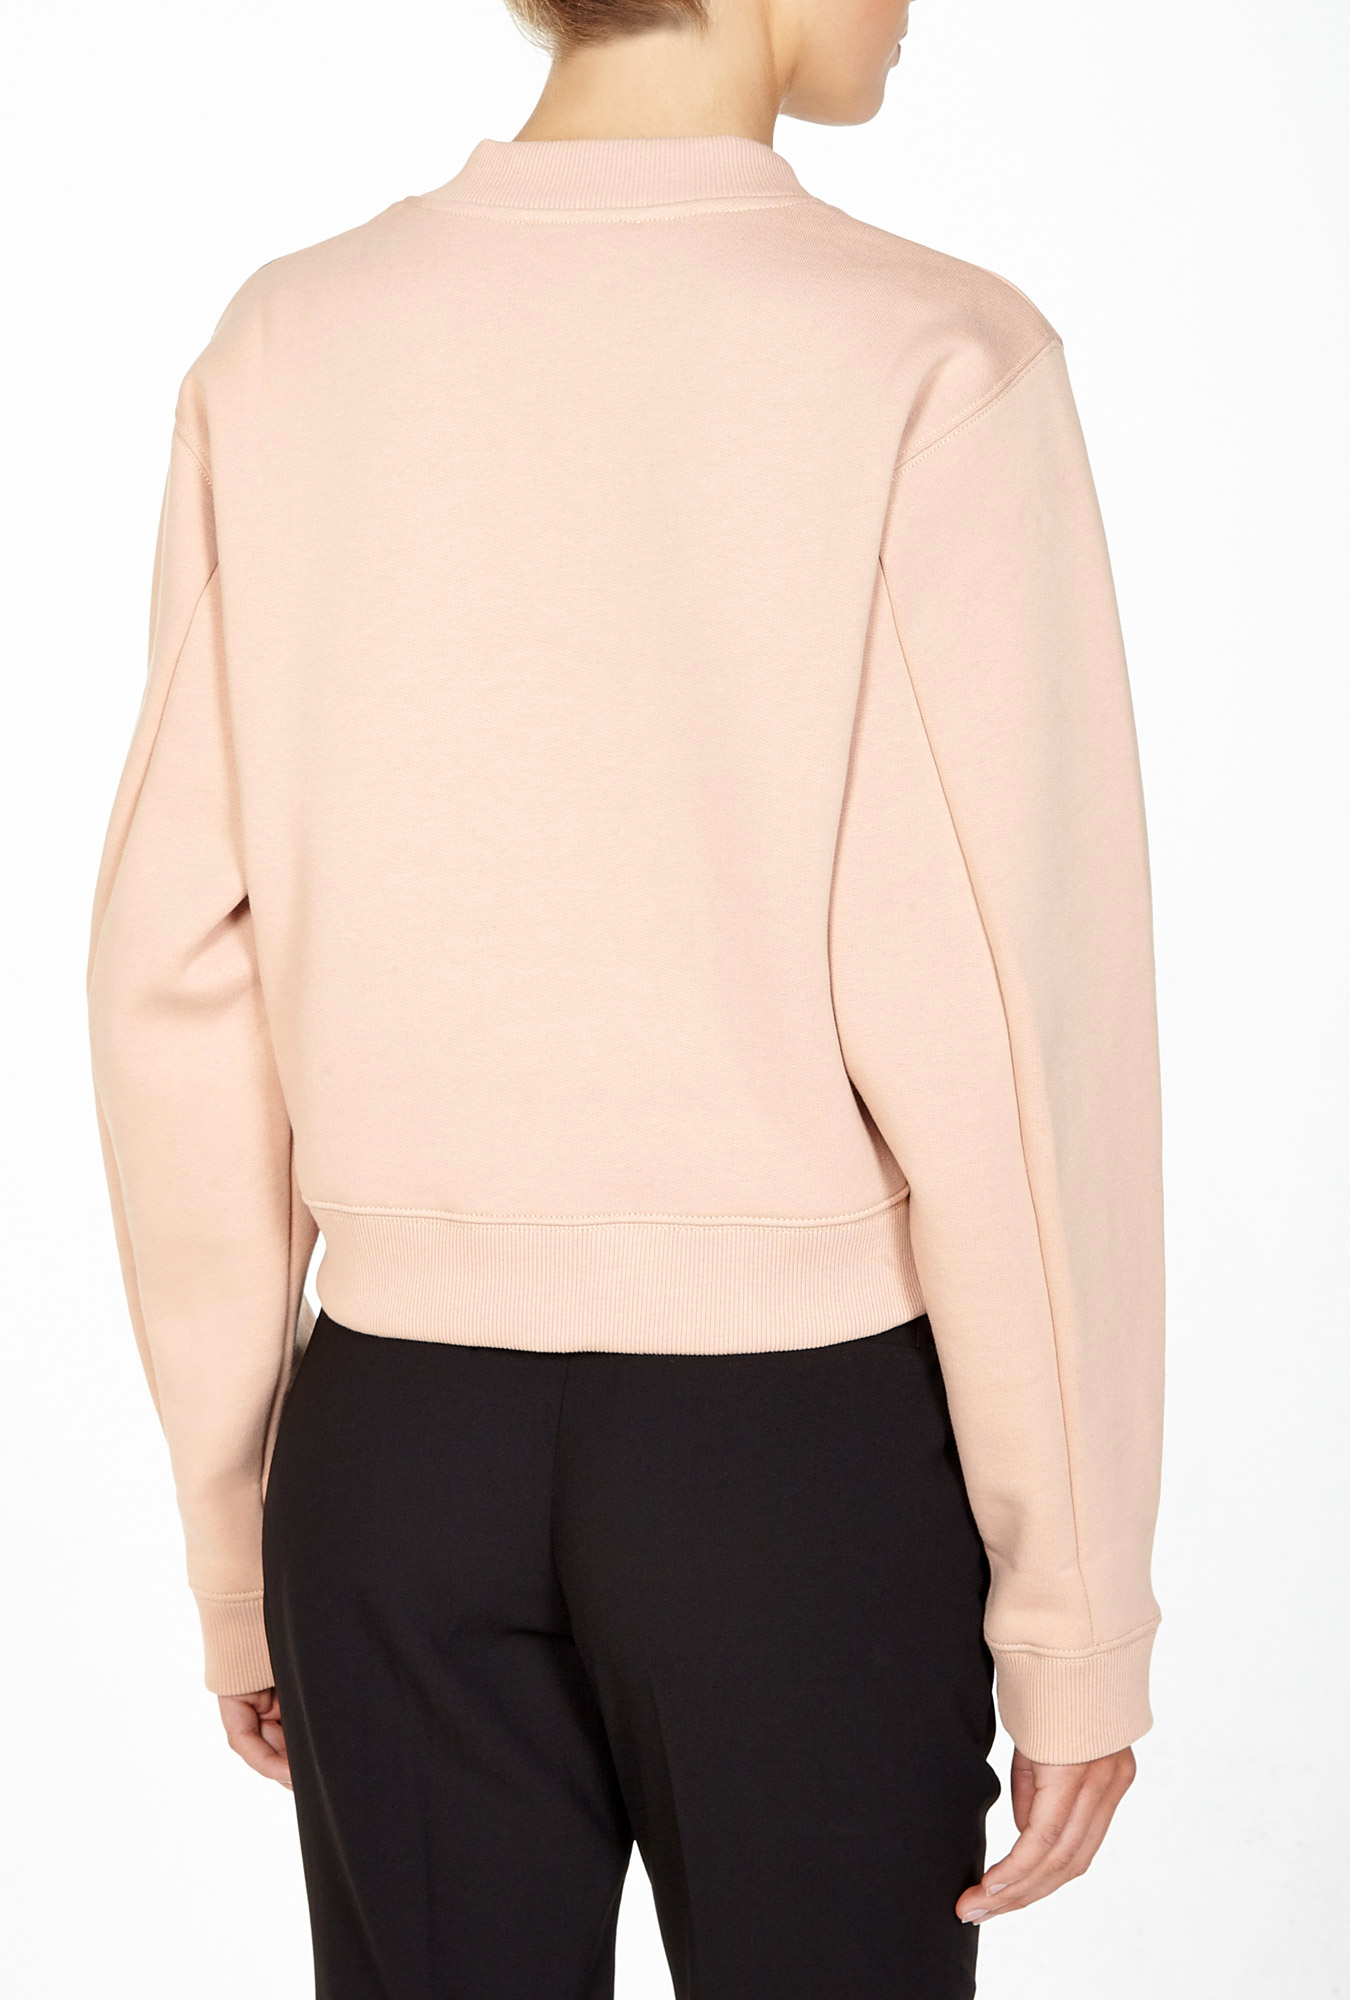 Acne Sweatshirt in Pink (Skin color) | Lyst